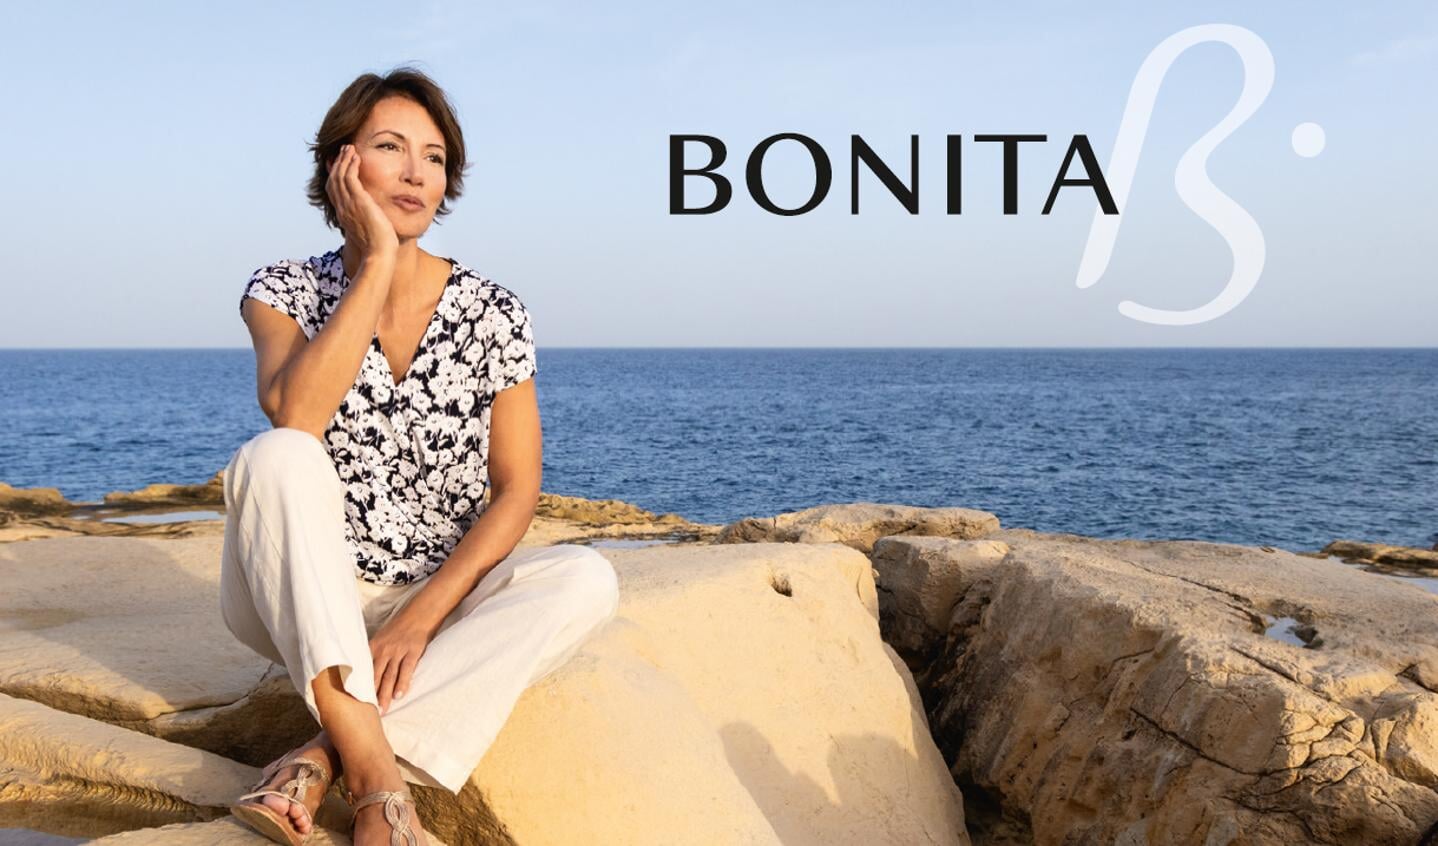 Bonita staat voor mode die hoogwaardig, aantrekkelijk en duurzaam is.  